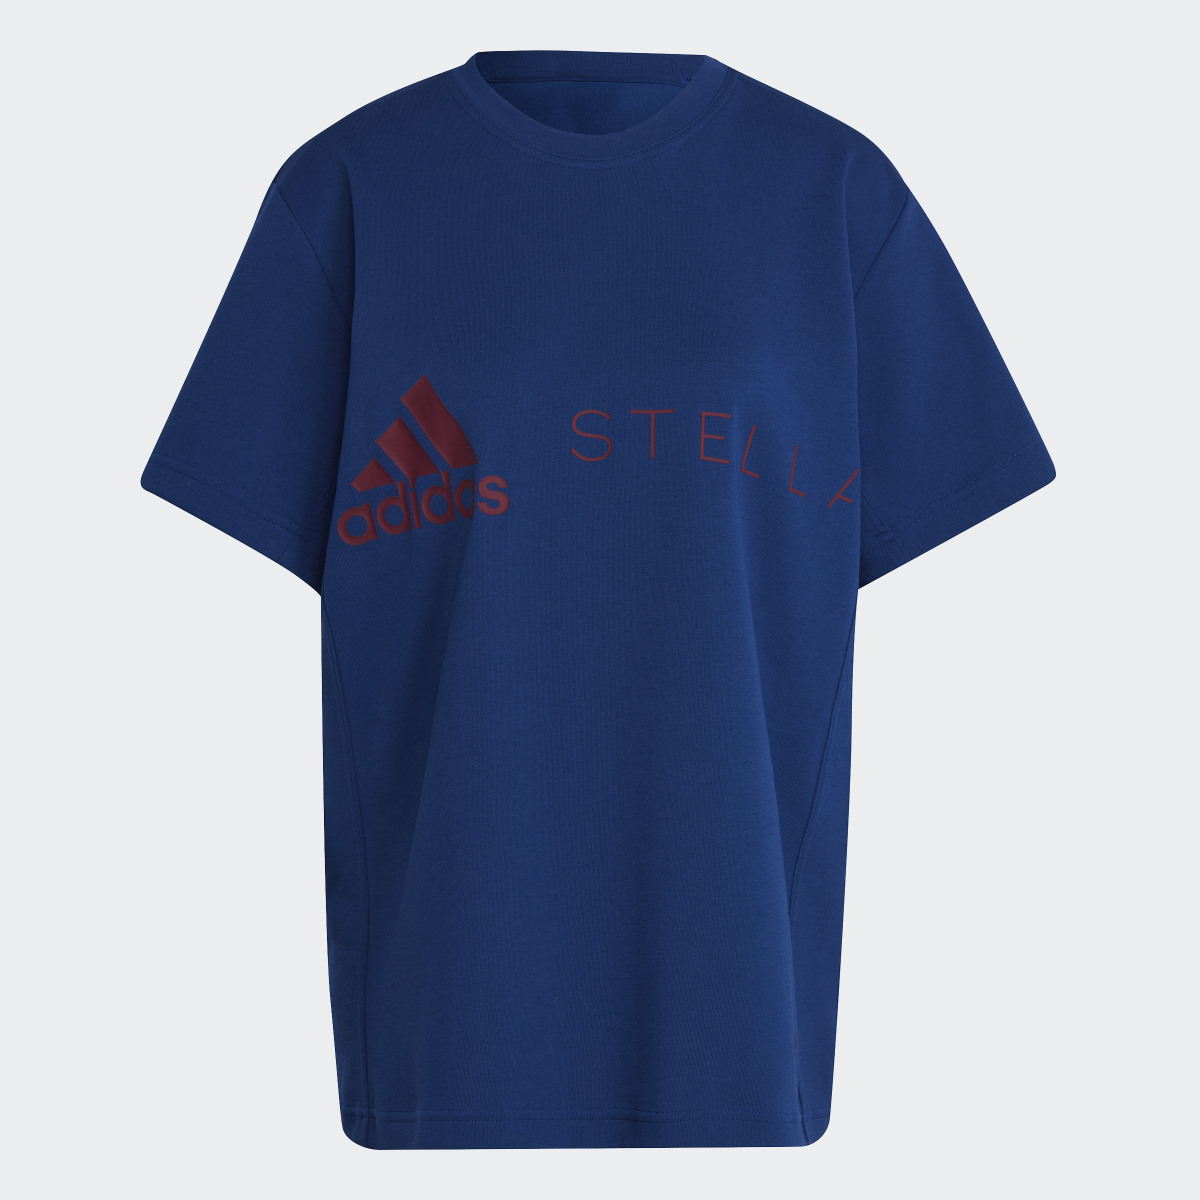 Adidas T-shirt Logo adidas by Stella McCartney.. 4